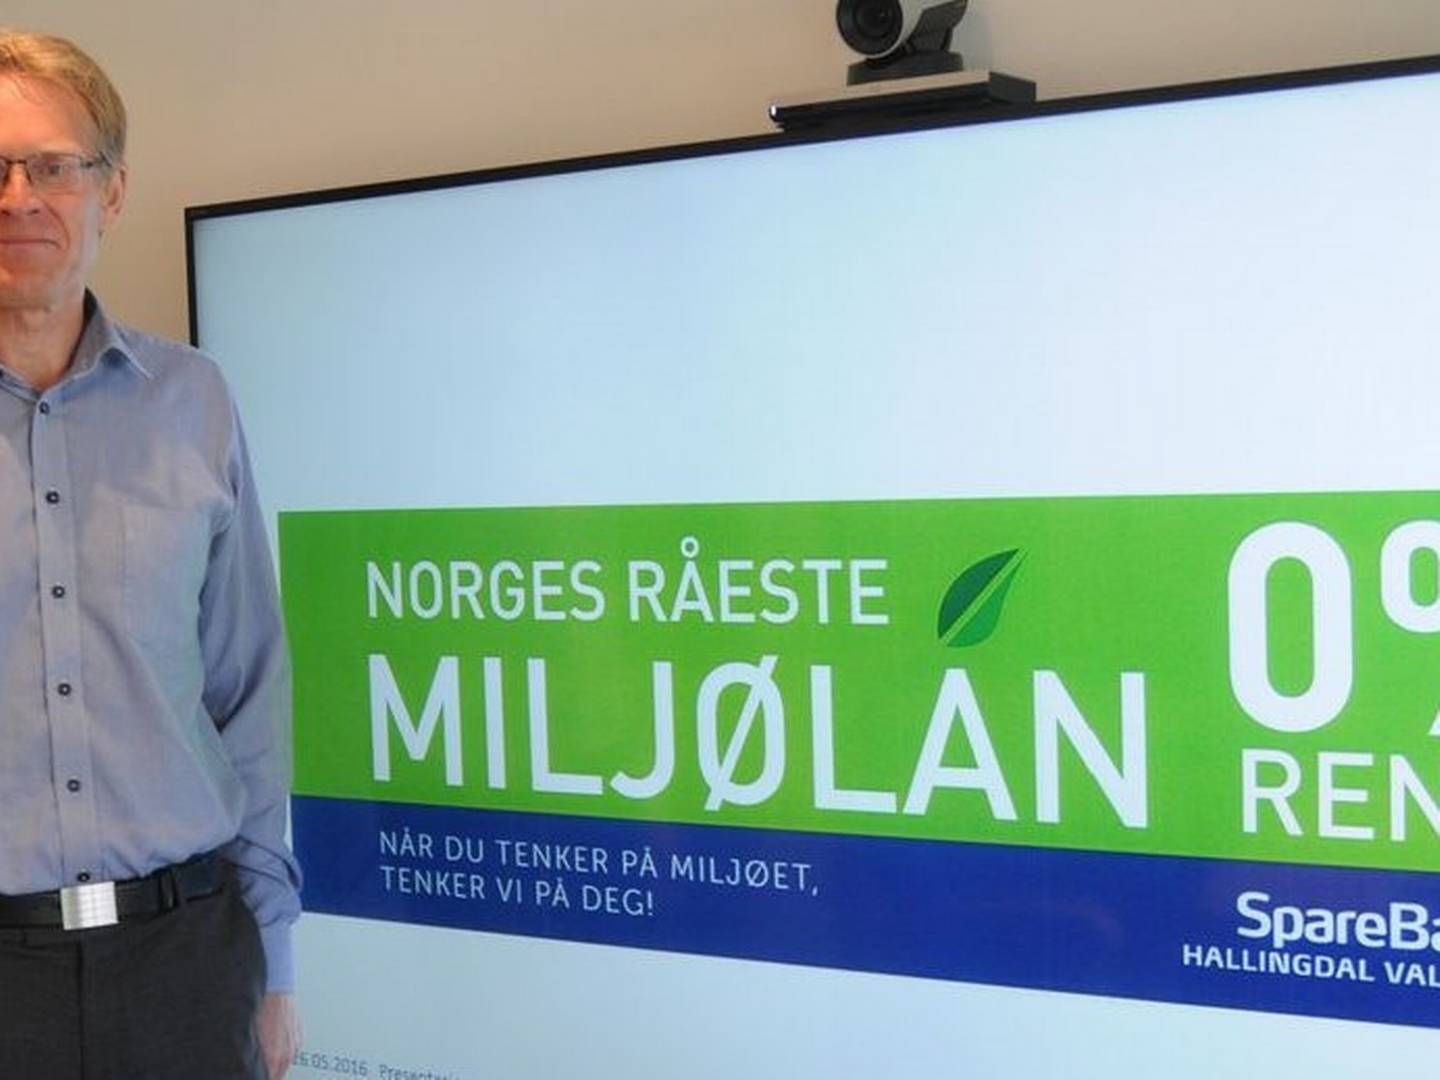 Administrerende banksjef Knut Oscar Fleten, SpareBank 1 Hallingdal Valdres. | Foto: SpareBank 1 Hallingdal Valdres